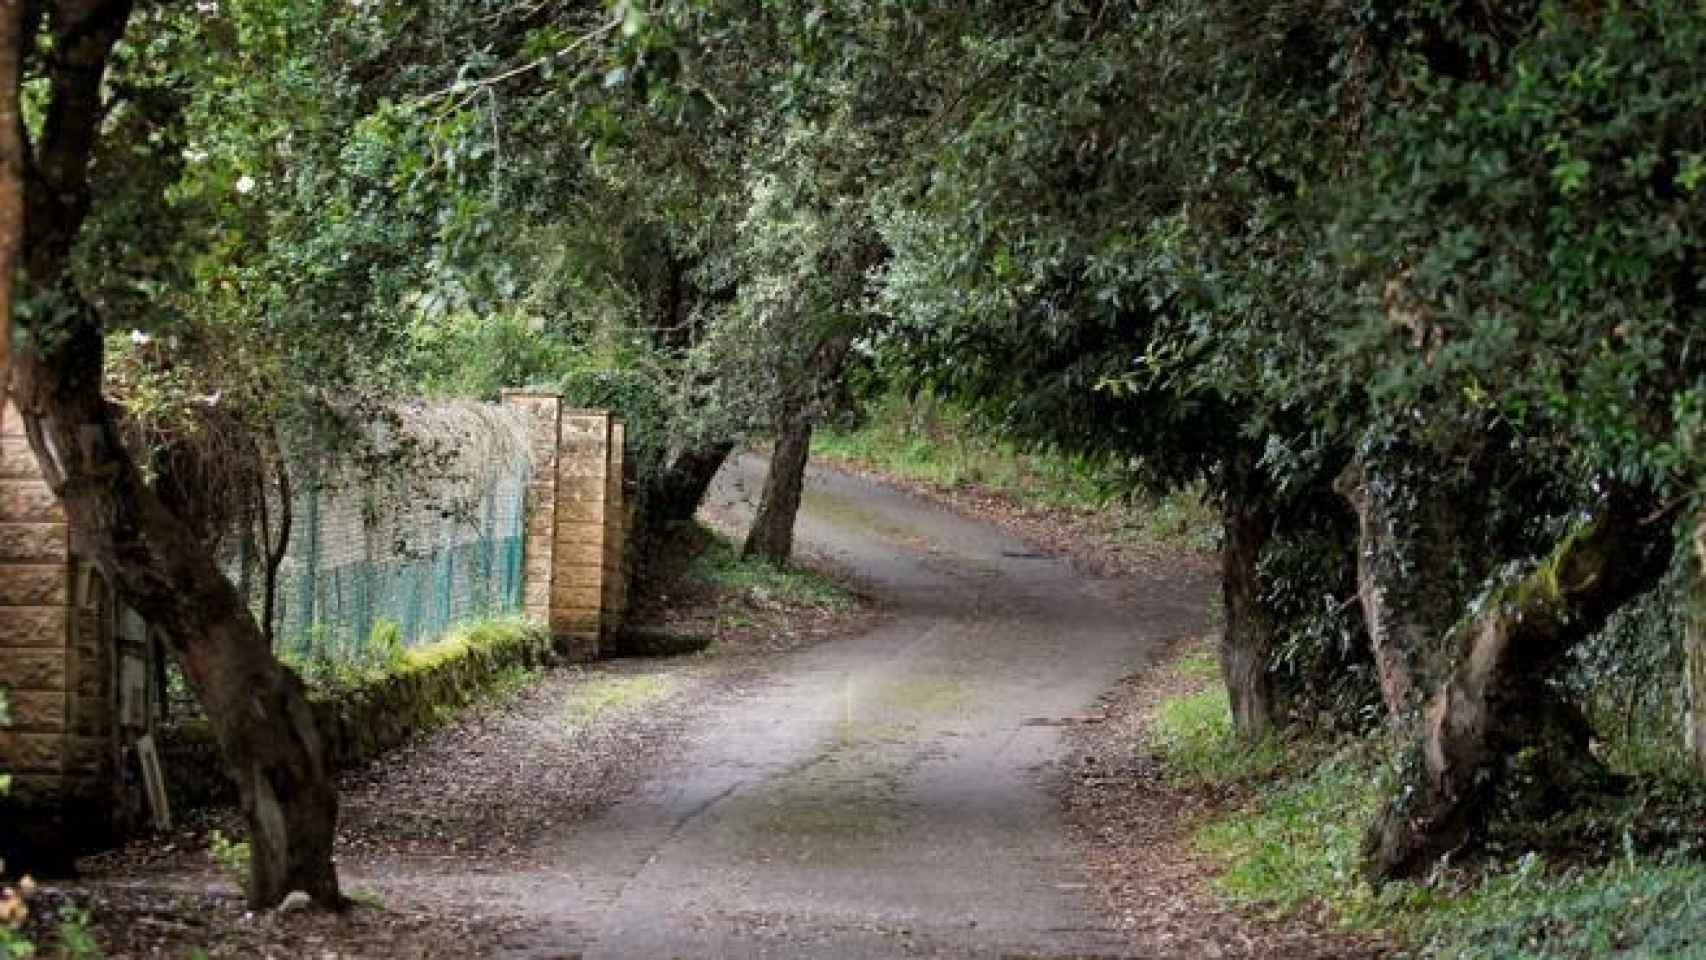 Camino de acceso a la casa de Ardines en Belmonte de Pría, donde apareció el cuerpo.